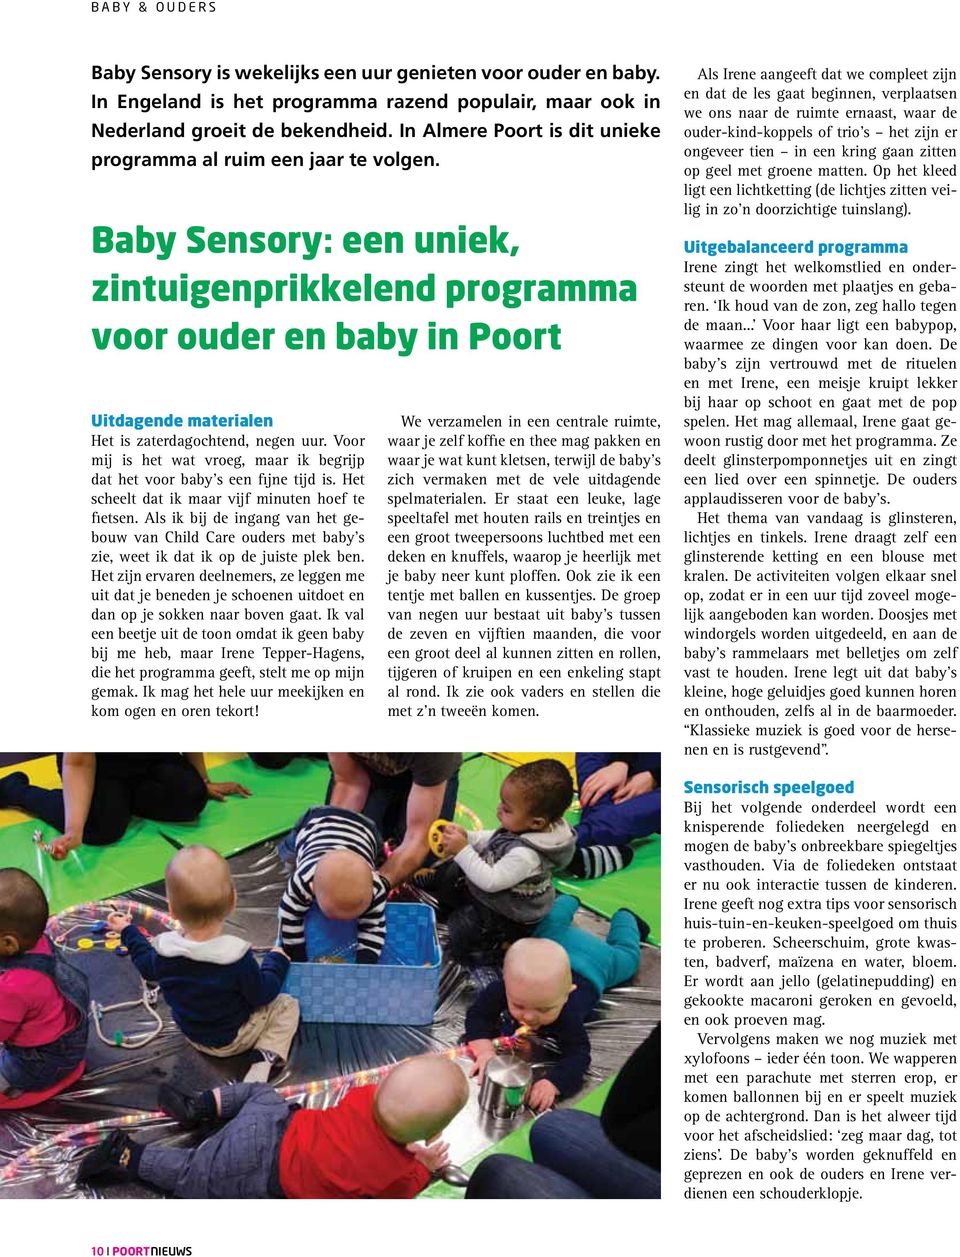 Baby Sensory: een uniek, zintuigenprikkelend programma voor ouder en baby in Poort Uitdagende materialen Het is zaterdagochtend, negen uur.